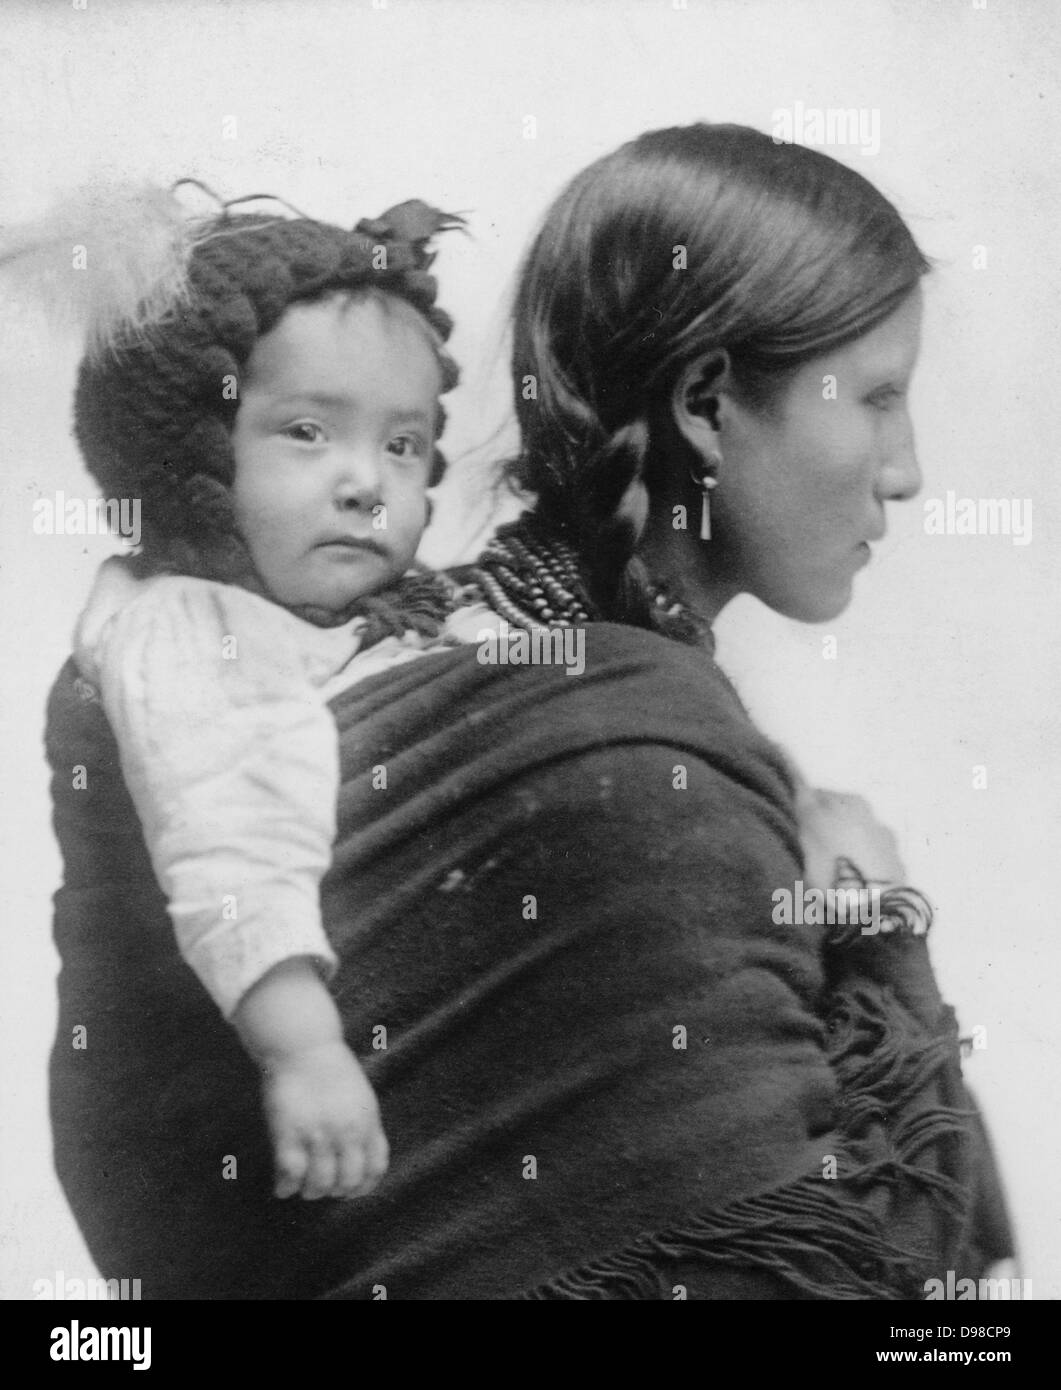 Native American donna dalla regione di pianure, mezza lunghezza verticale, rivolto verso destra con il bambino sulla schiena. Xx secolo ventesimo secolo Foto Stock